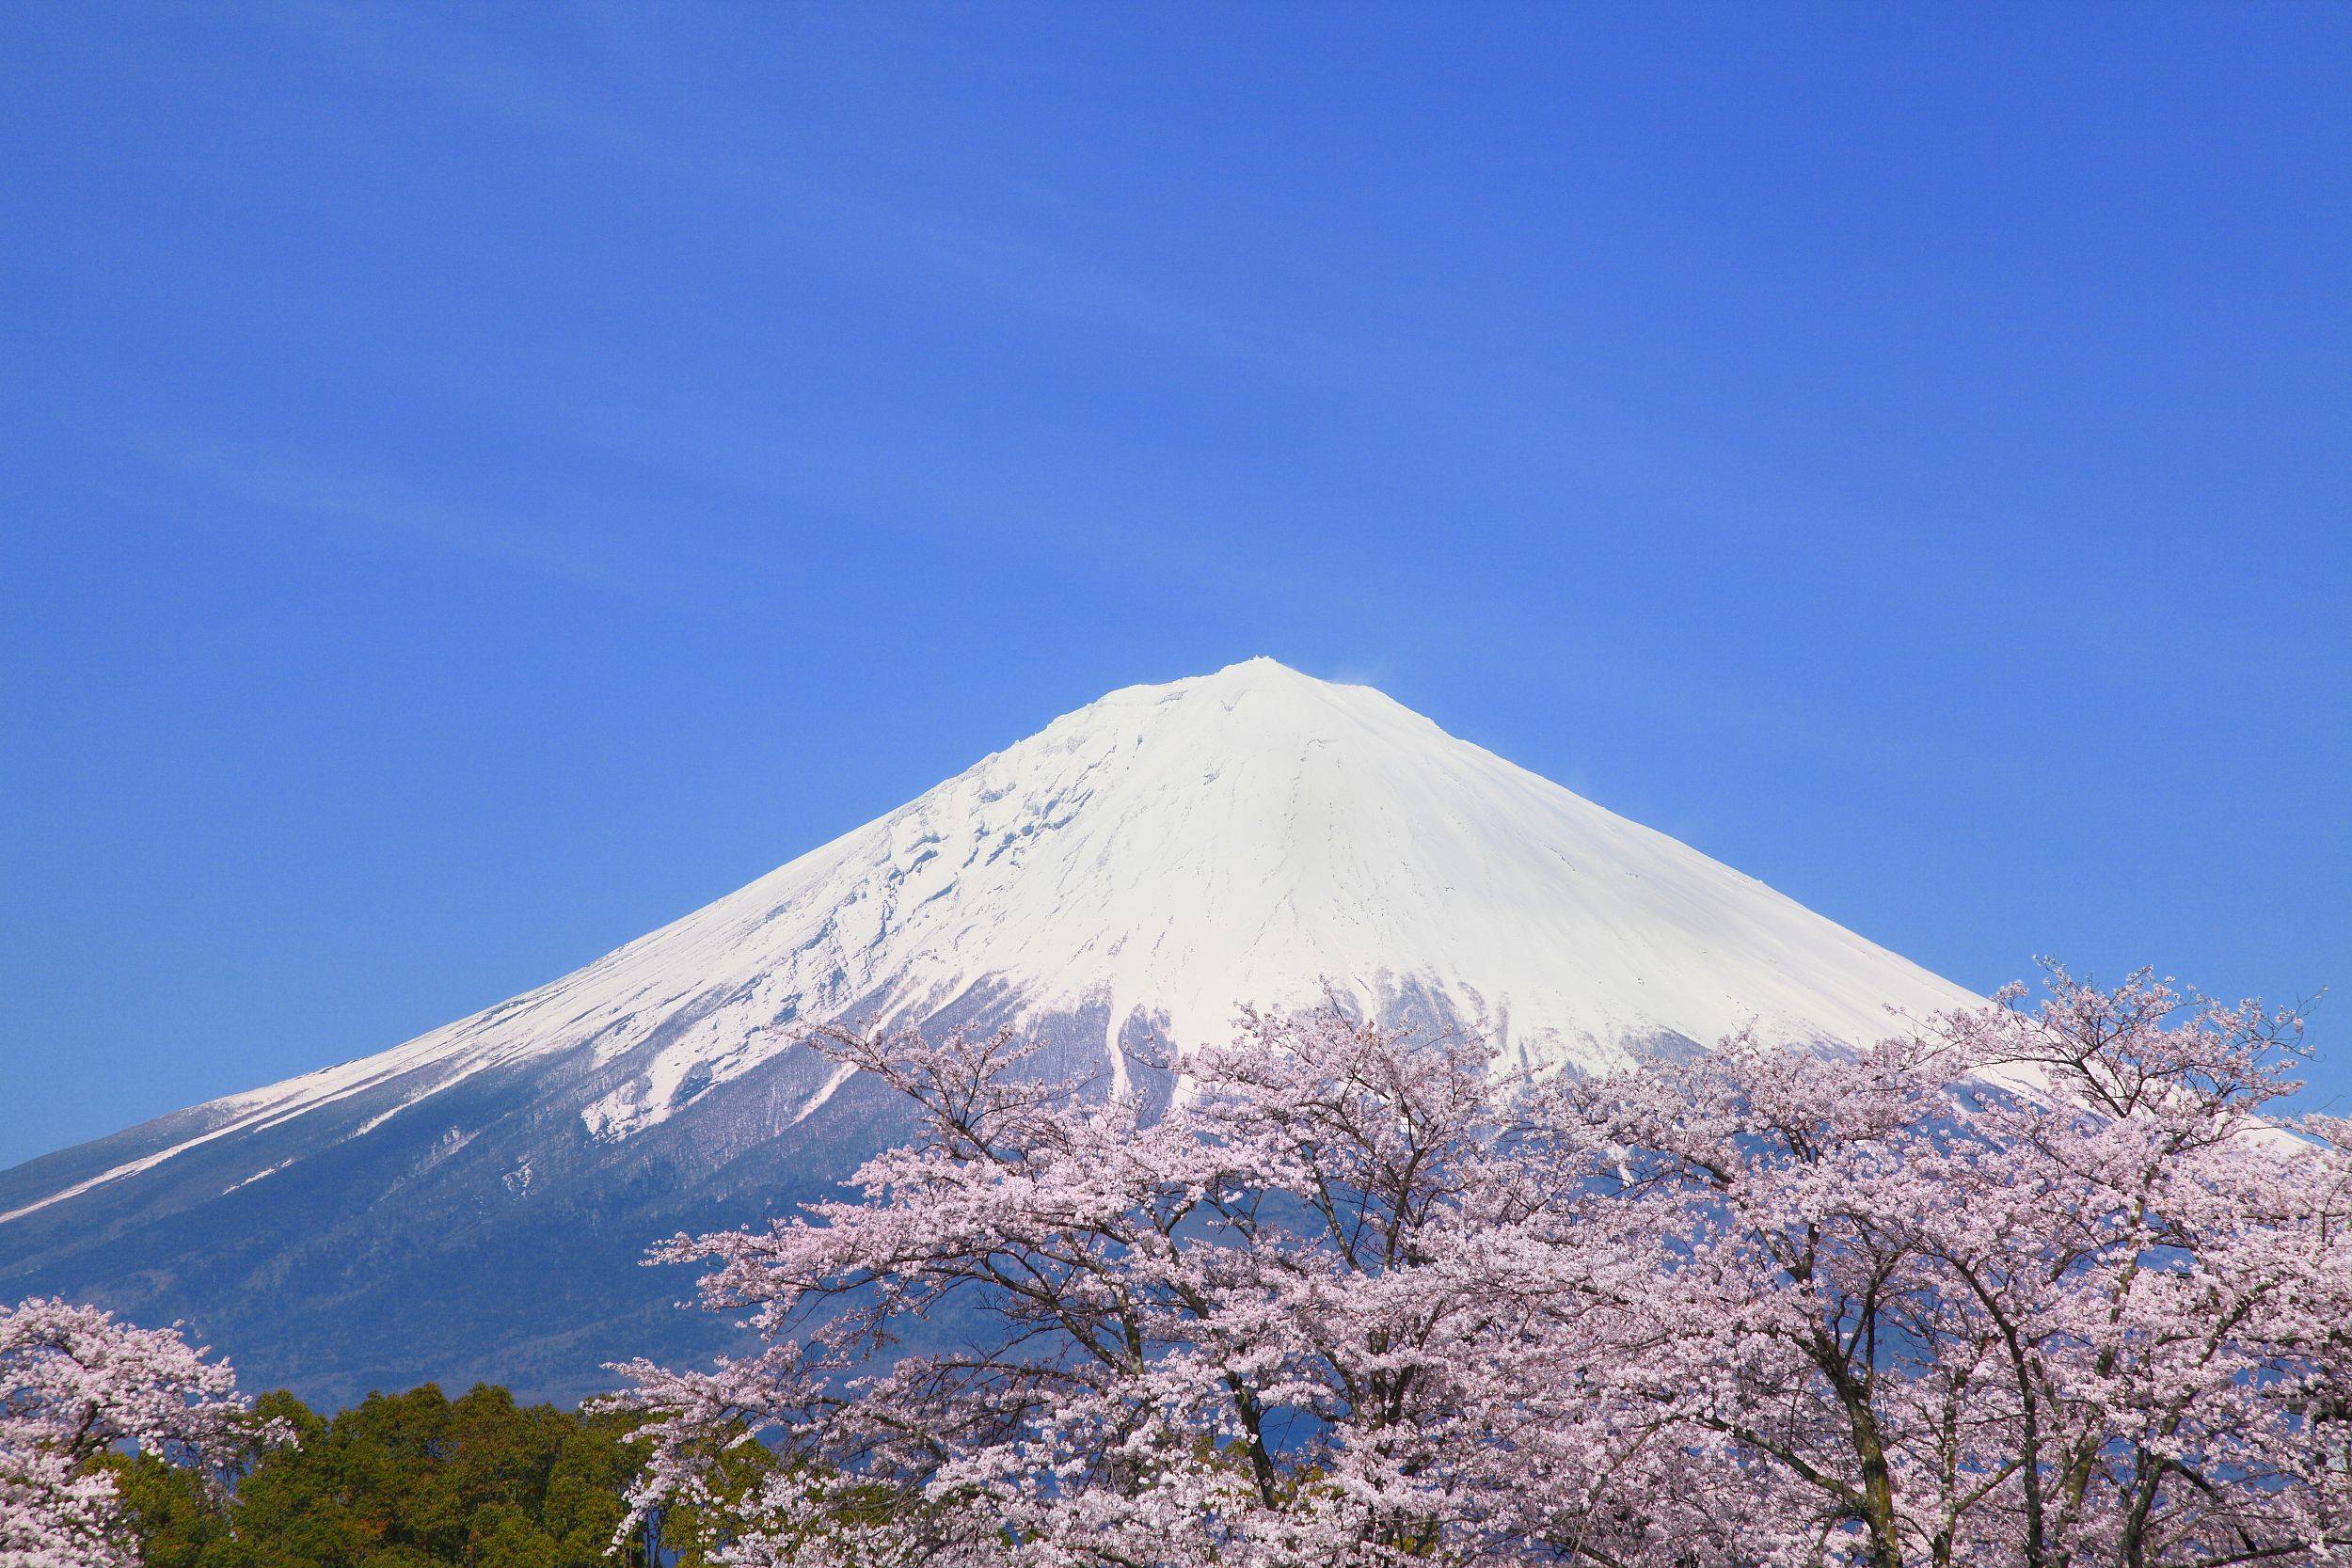 原创日本富士山